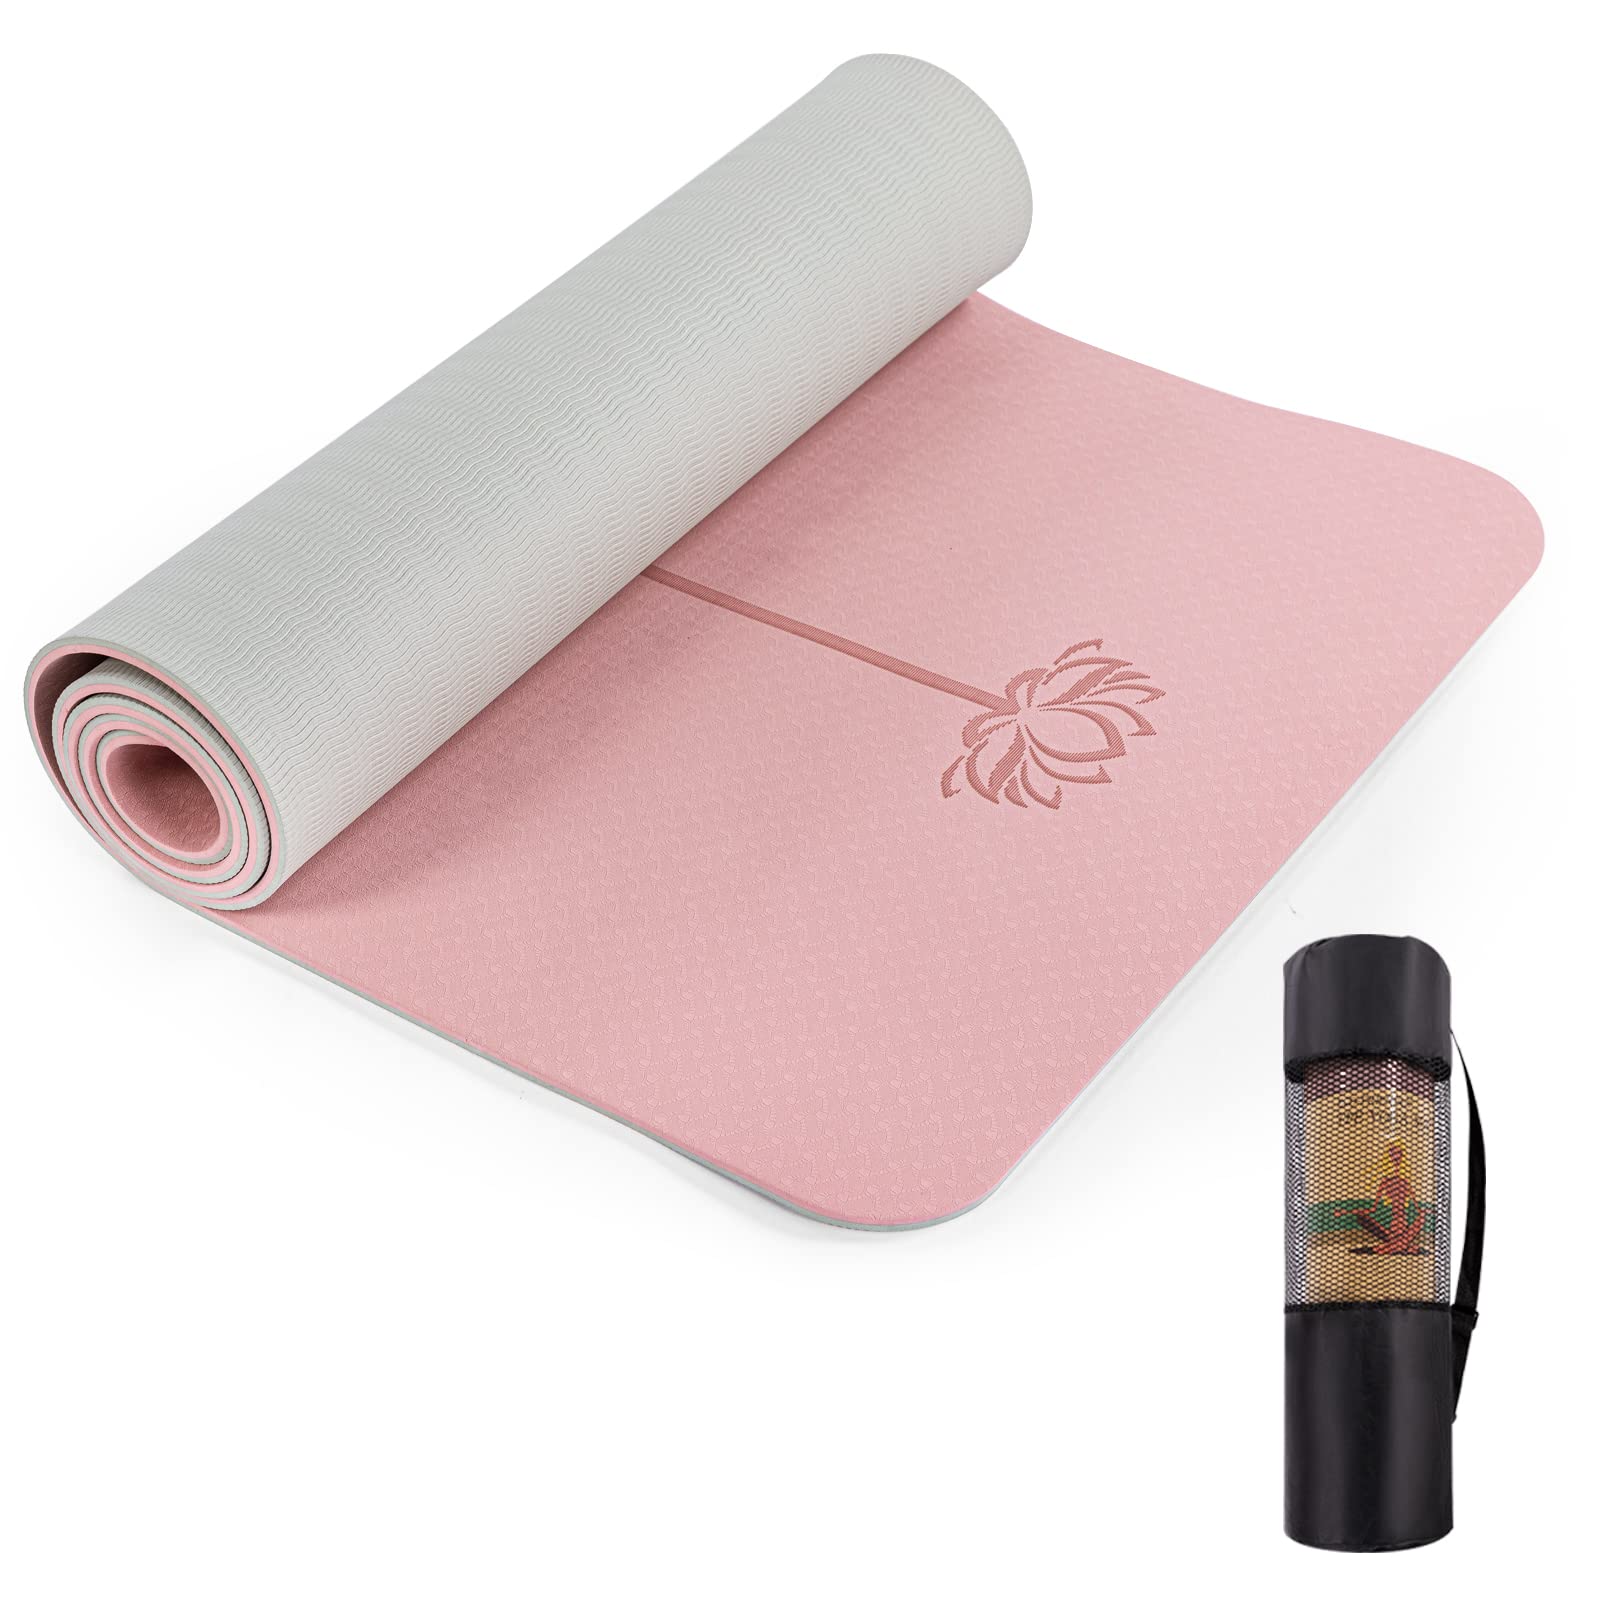 Thick Non-Slip Yoga Mat